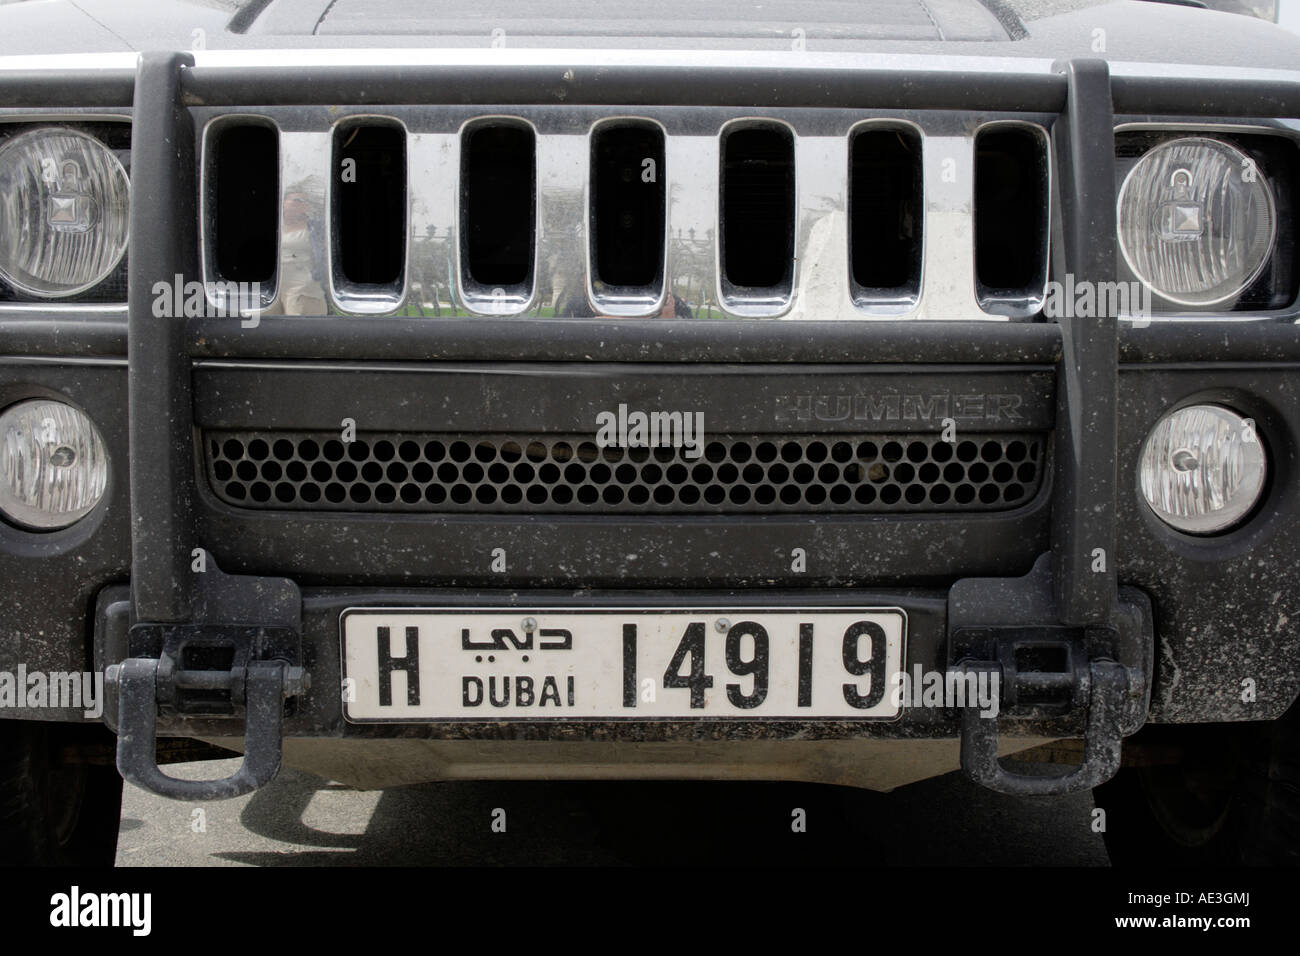 Licenza di auto e piastra anteriore di un Hummer fuoristrada, Dubai, Emirati Arabi Uniti. Foto di Willy Matheisl Foto Stock